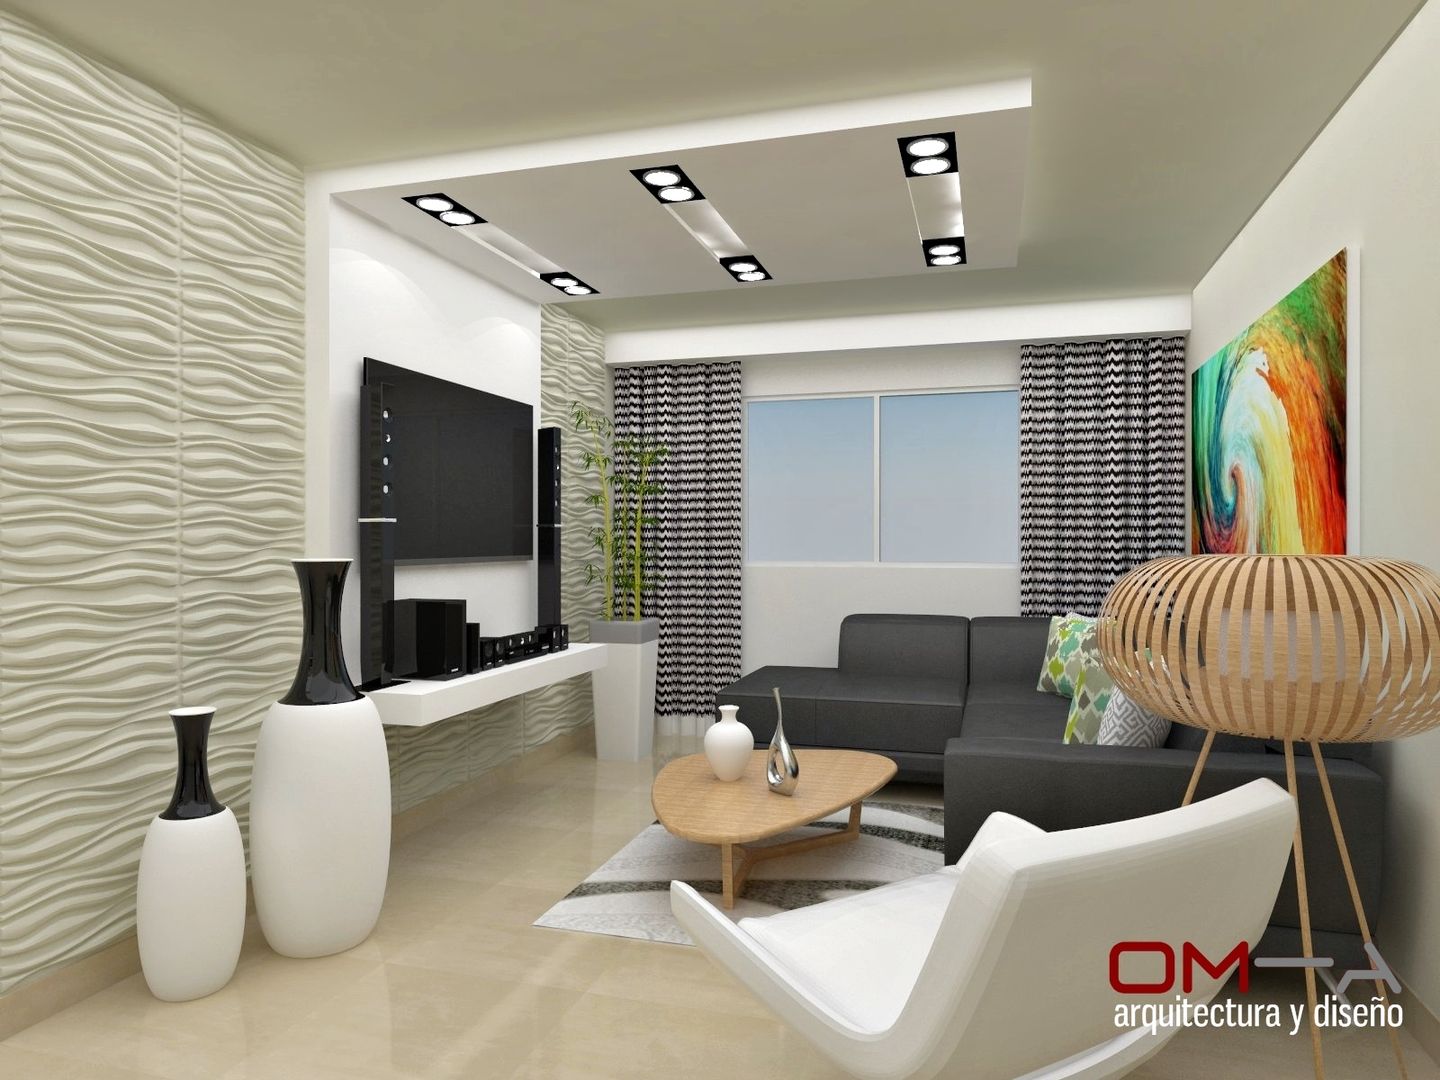 Diseño interior en apartamento , om-a arquitectura y diseño om-a arquitectura y diseño ห้องนั่งเล่น